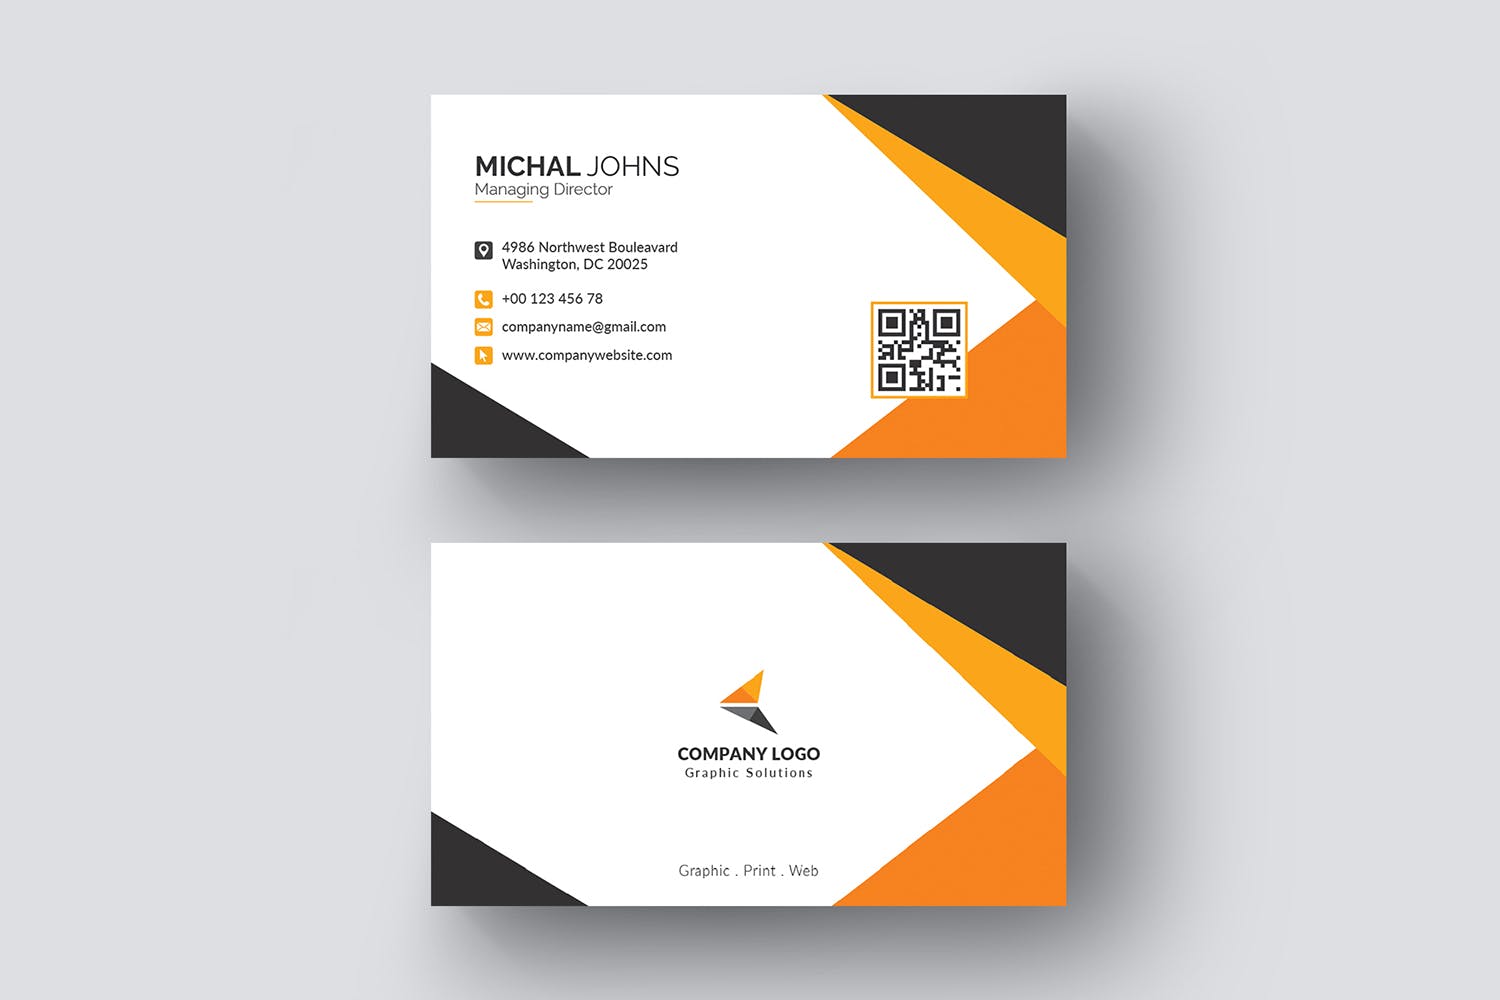 现代创意设计风格企业名片模板 Business Card插图(3)